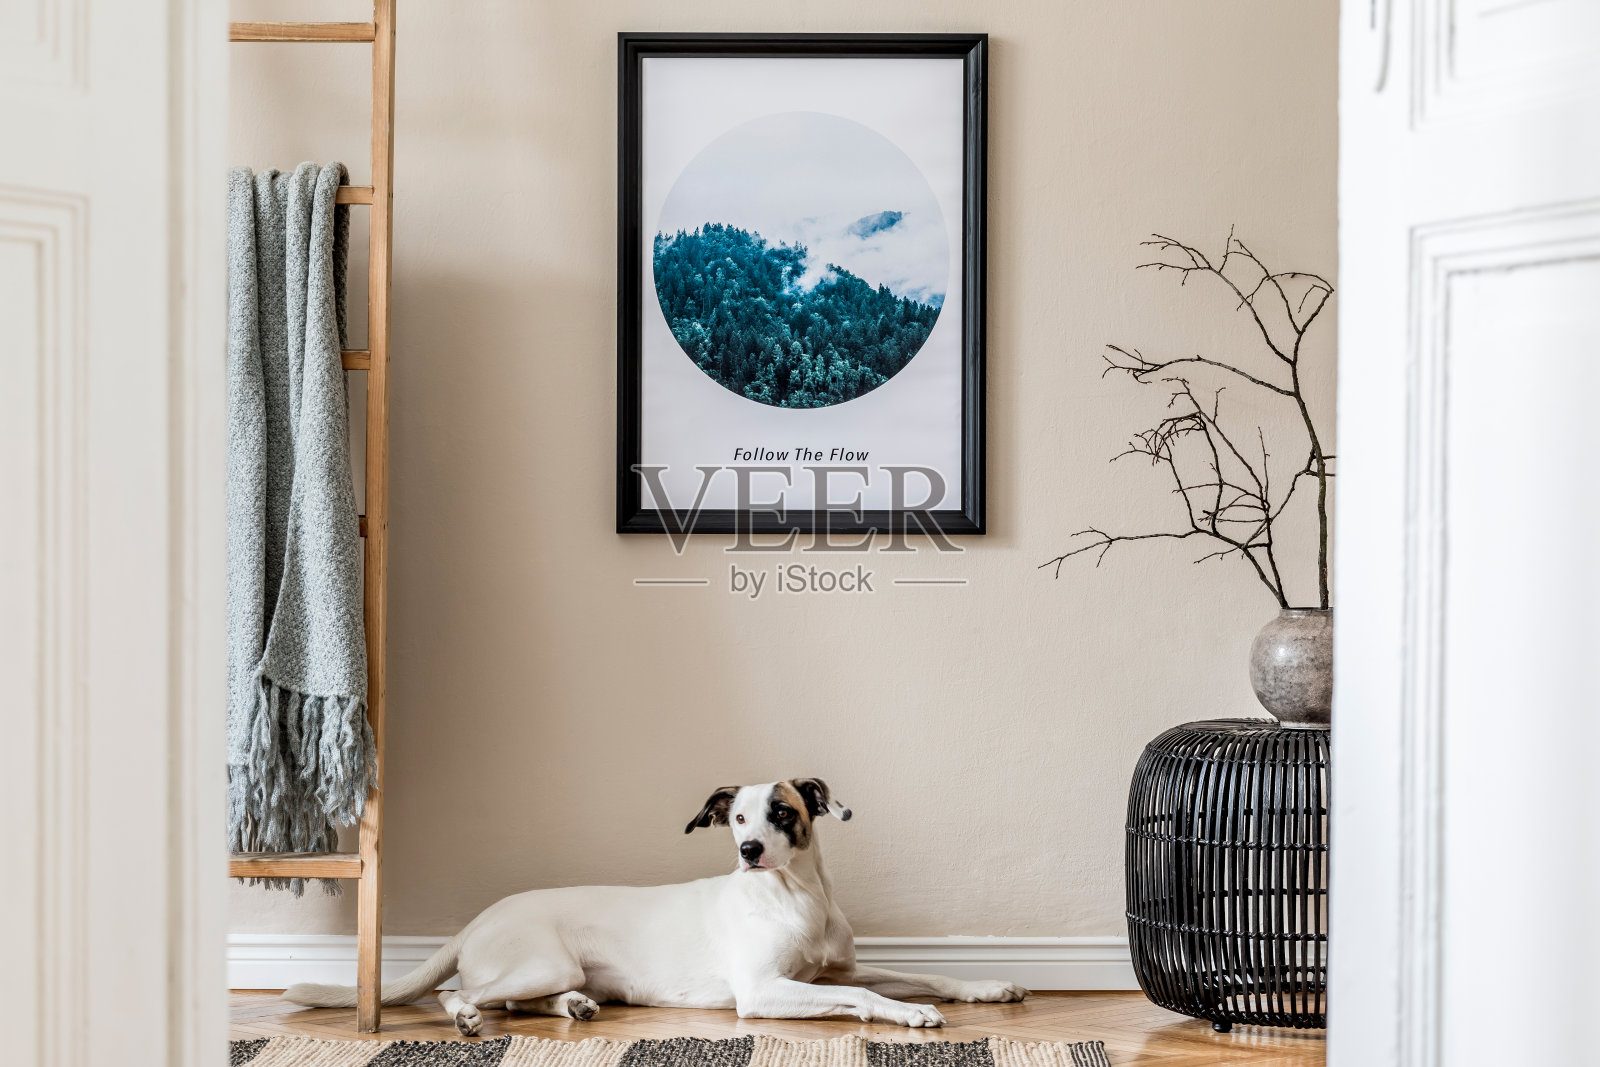 客厅室内设计有黑藤蒲团、花瓶插花、木梯、格子花纹和优雅的配饰。时尚的家里举办。模板。模拟海报框架。狗躺在地板上。照片摄影图片